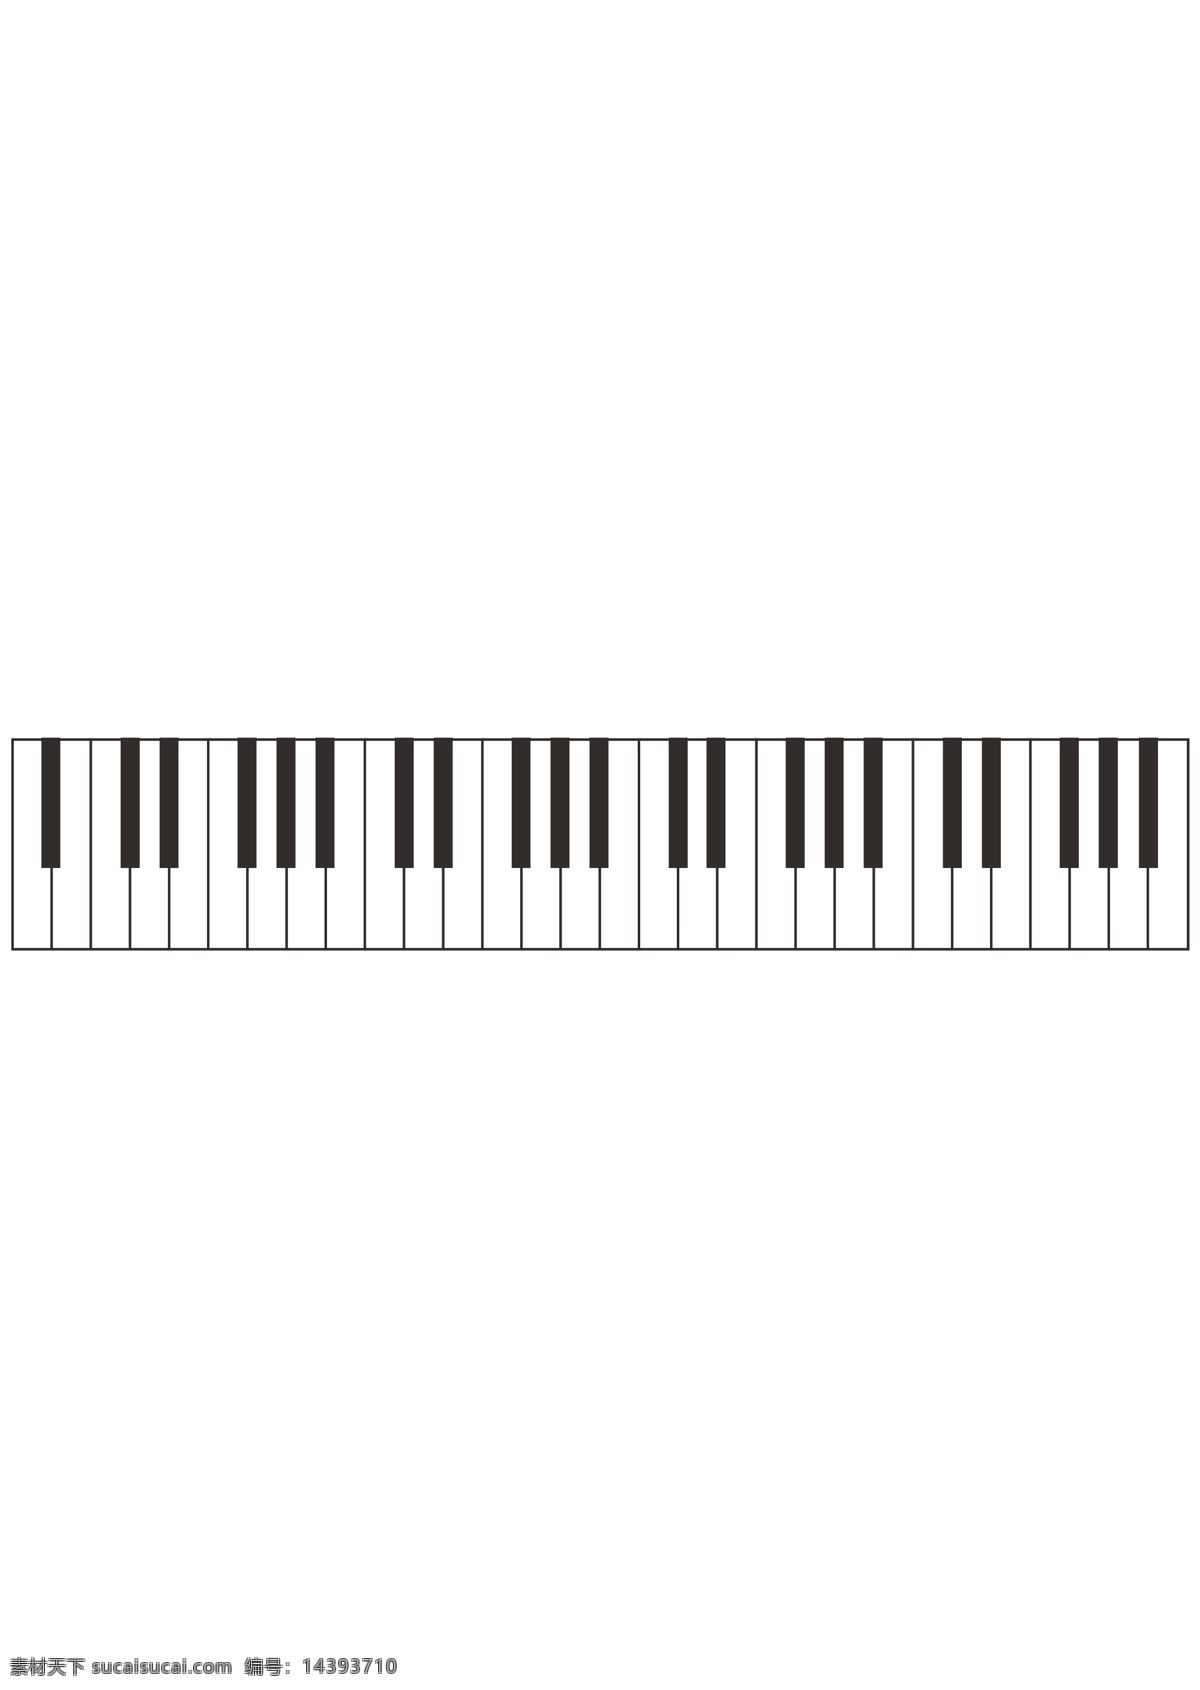 钢琴键图片 钢琴键 钢琴 钢琴矢量 钢琴剪影 音乐 乐器 杂七杂八